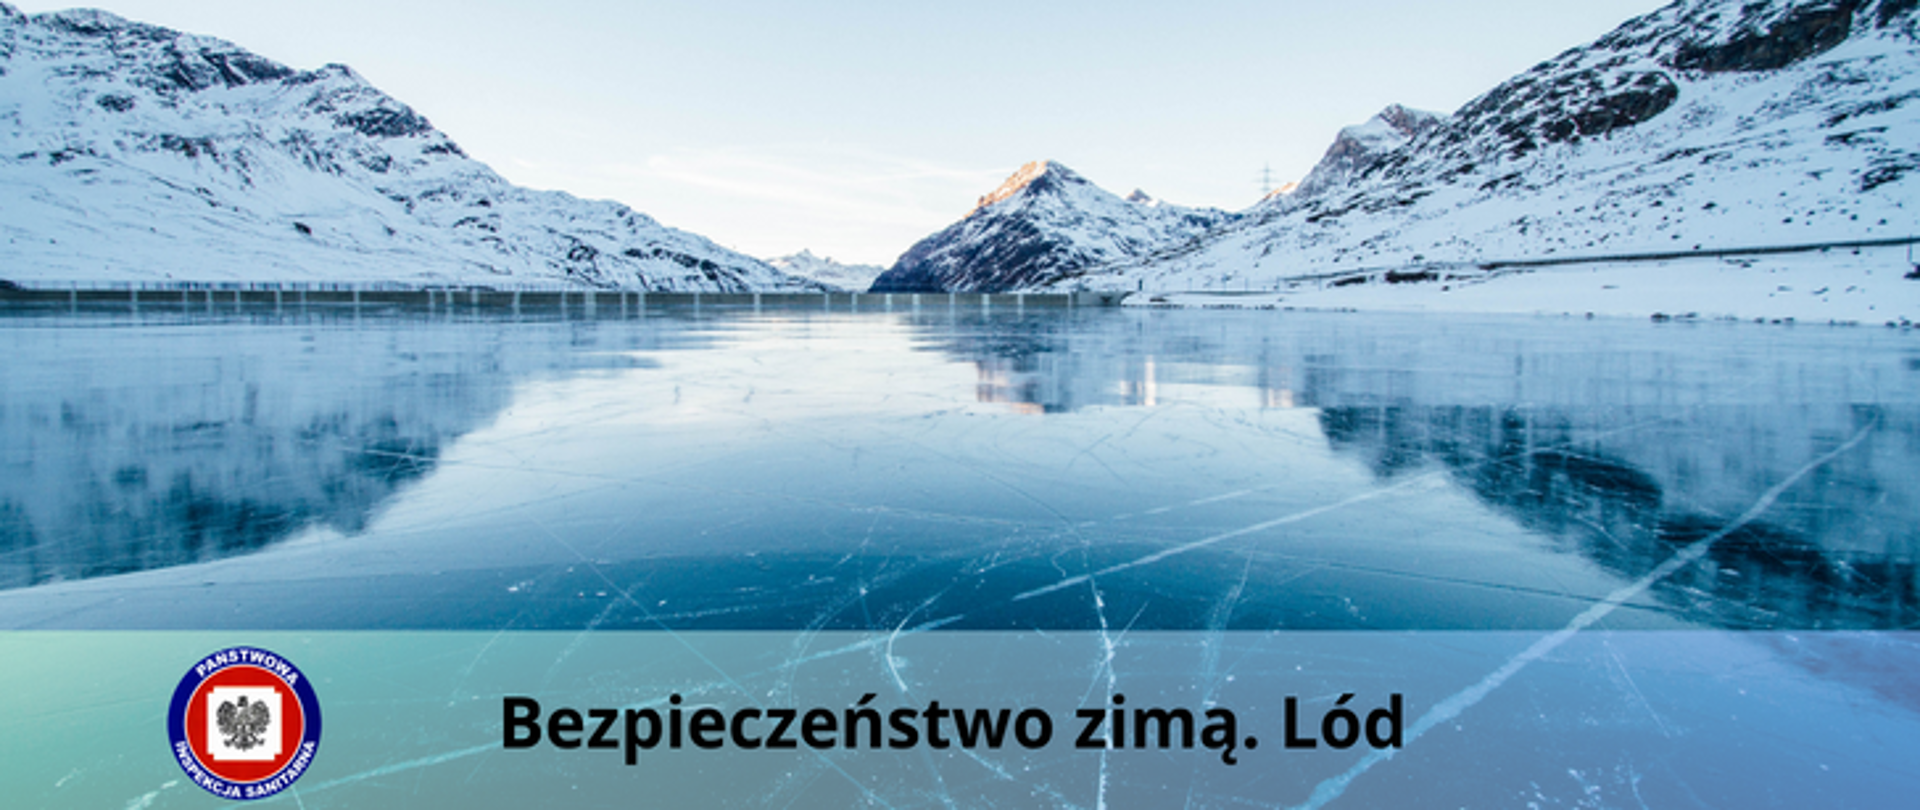 Górzyste pokryte śniegiem wybrzeże nad skutym lodem jeziorem, na dole przezroczysty pasek z czarnym napisem Bezpieczeństwo zimą. Lód a z lewej strony logo Państwowej Inspekcji Sanitarnej.